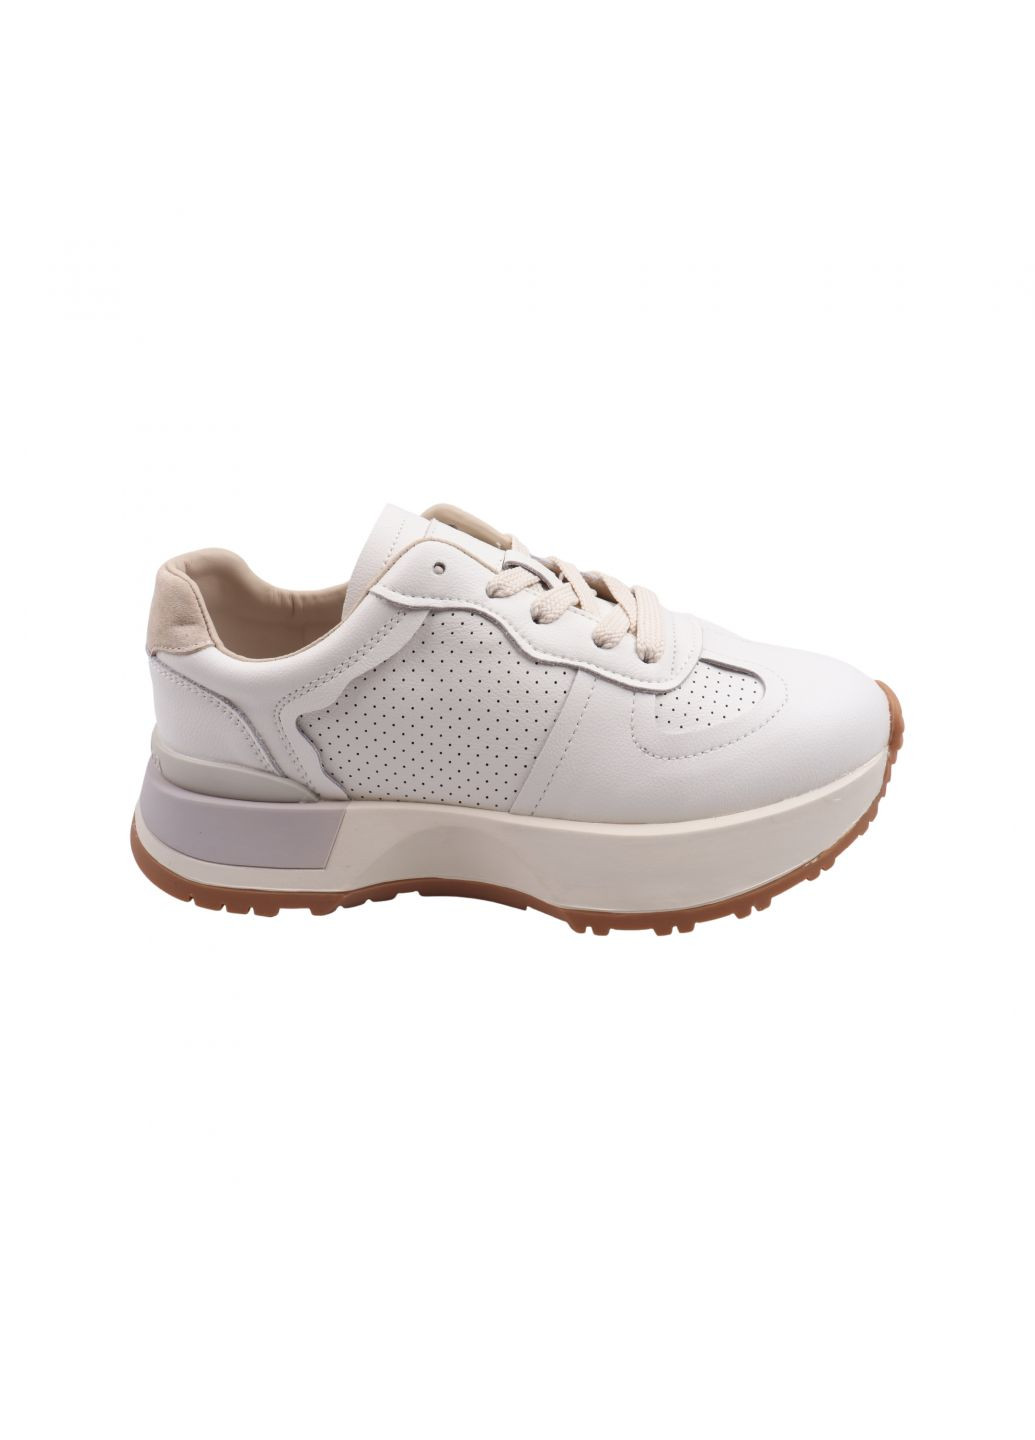 Білі кросівки жіночі молочні натуральна шкріа Lifexpert 1232-23DK